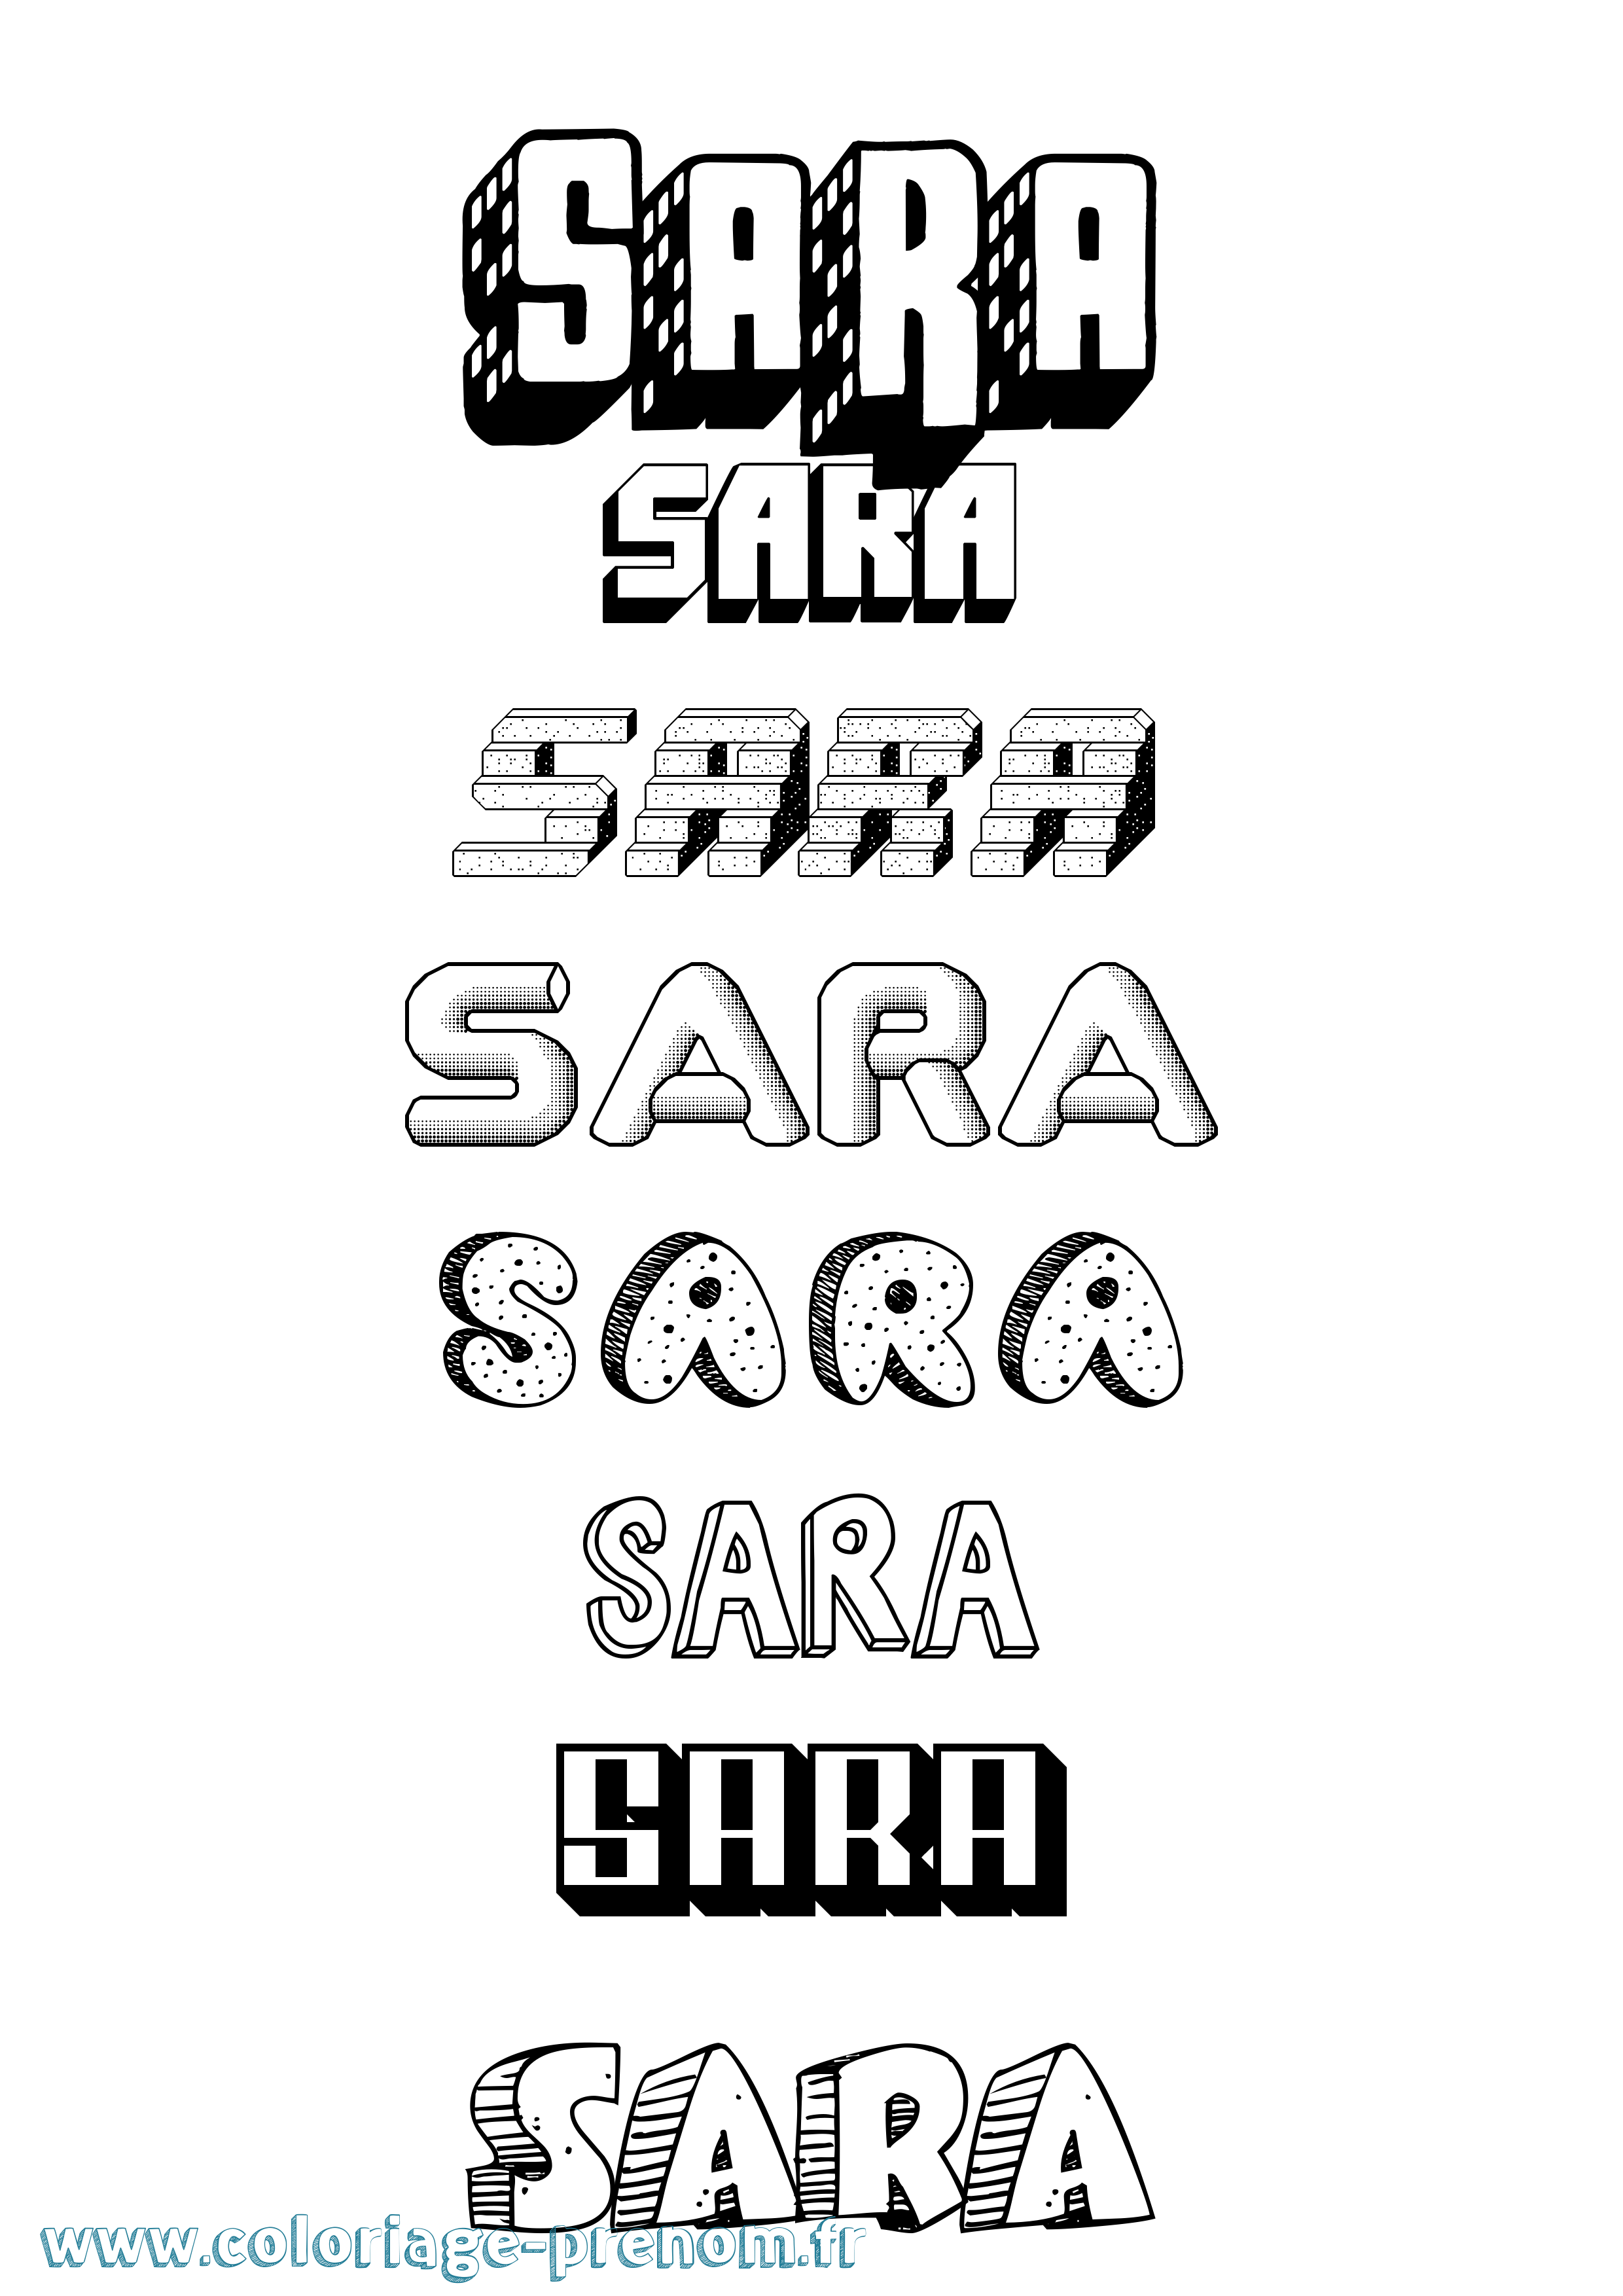 Coloriage prénom Sara